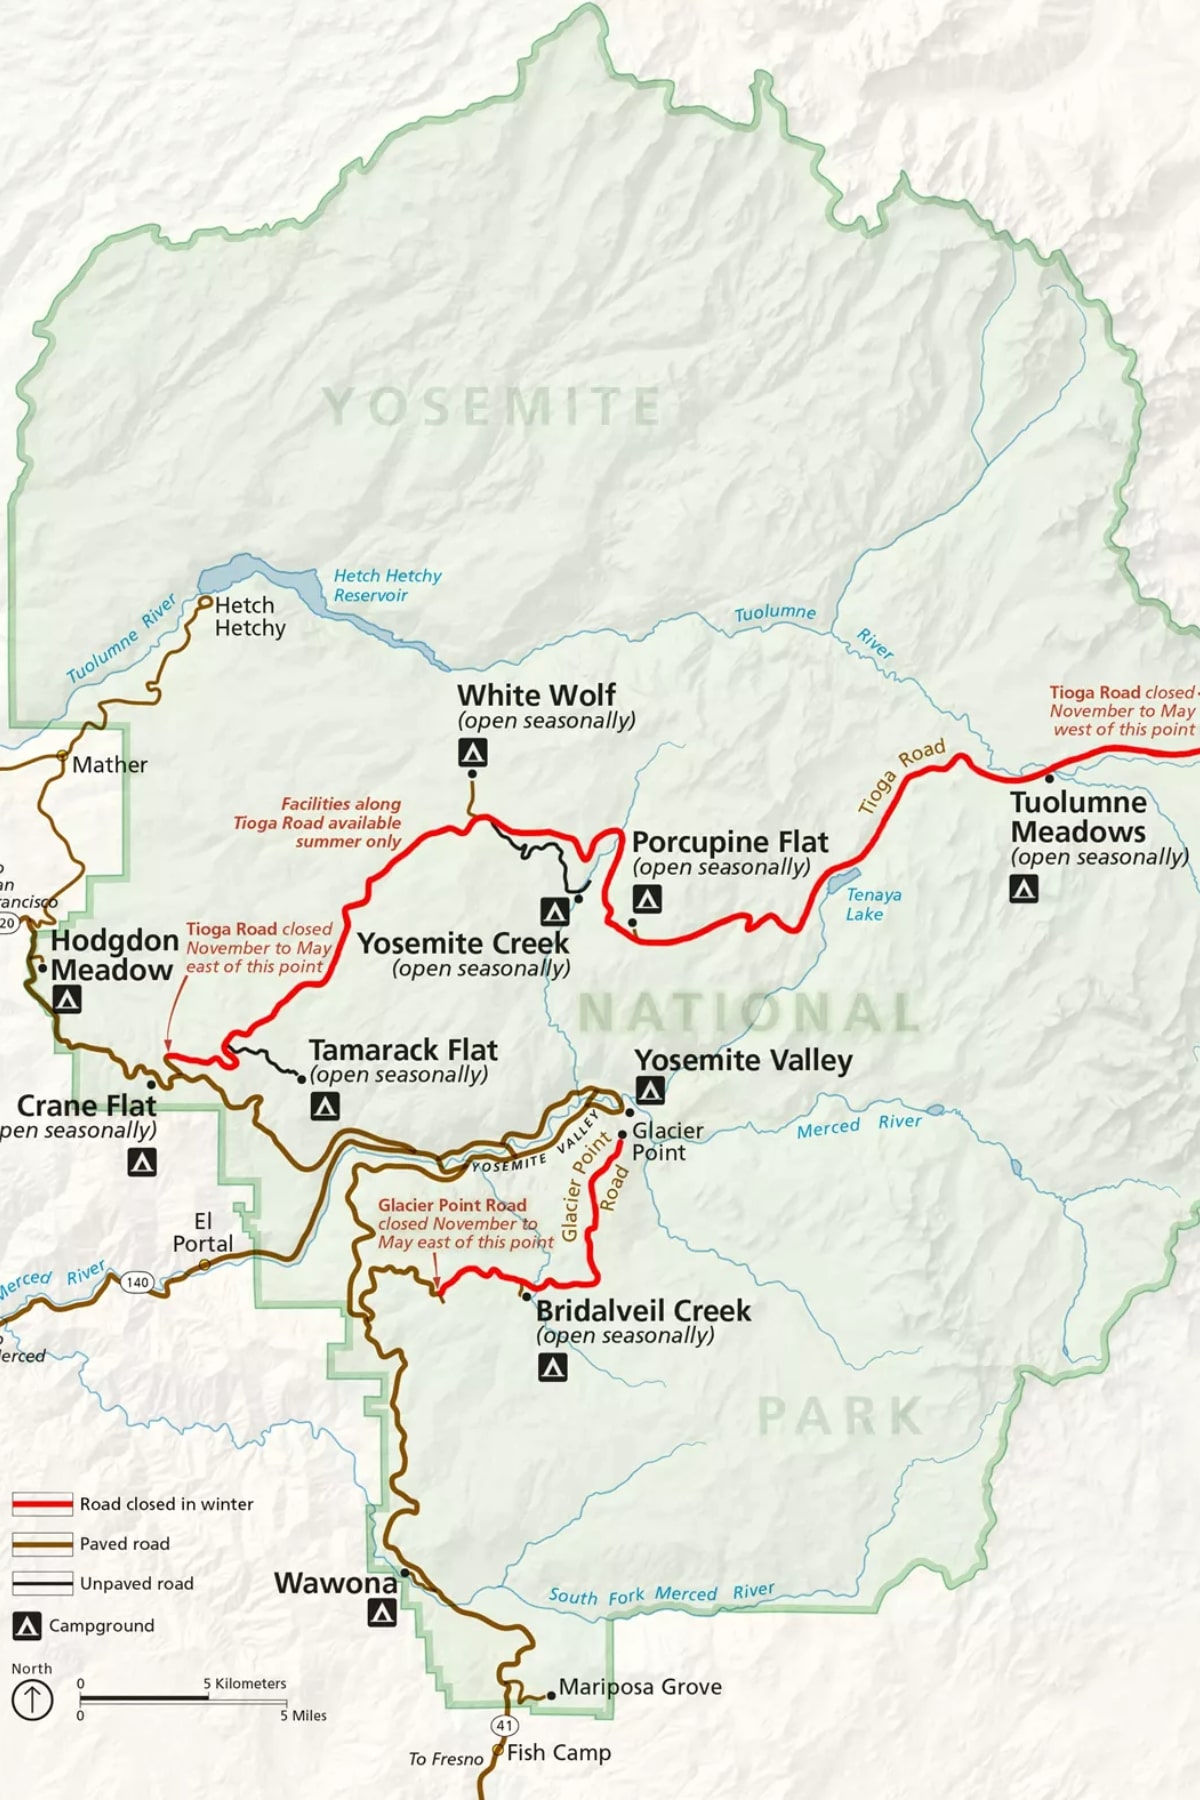 Map of Yosemite National Park winter road closures.
